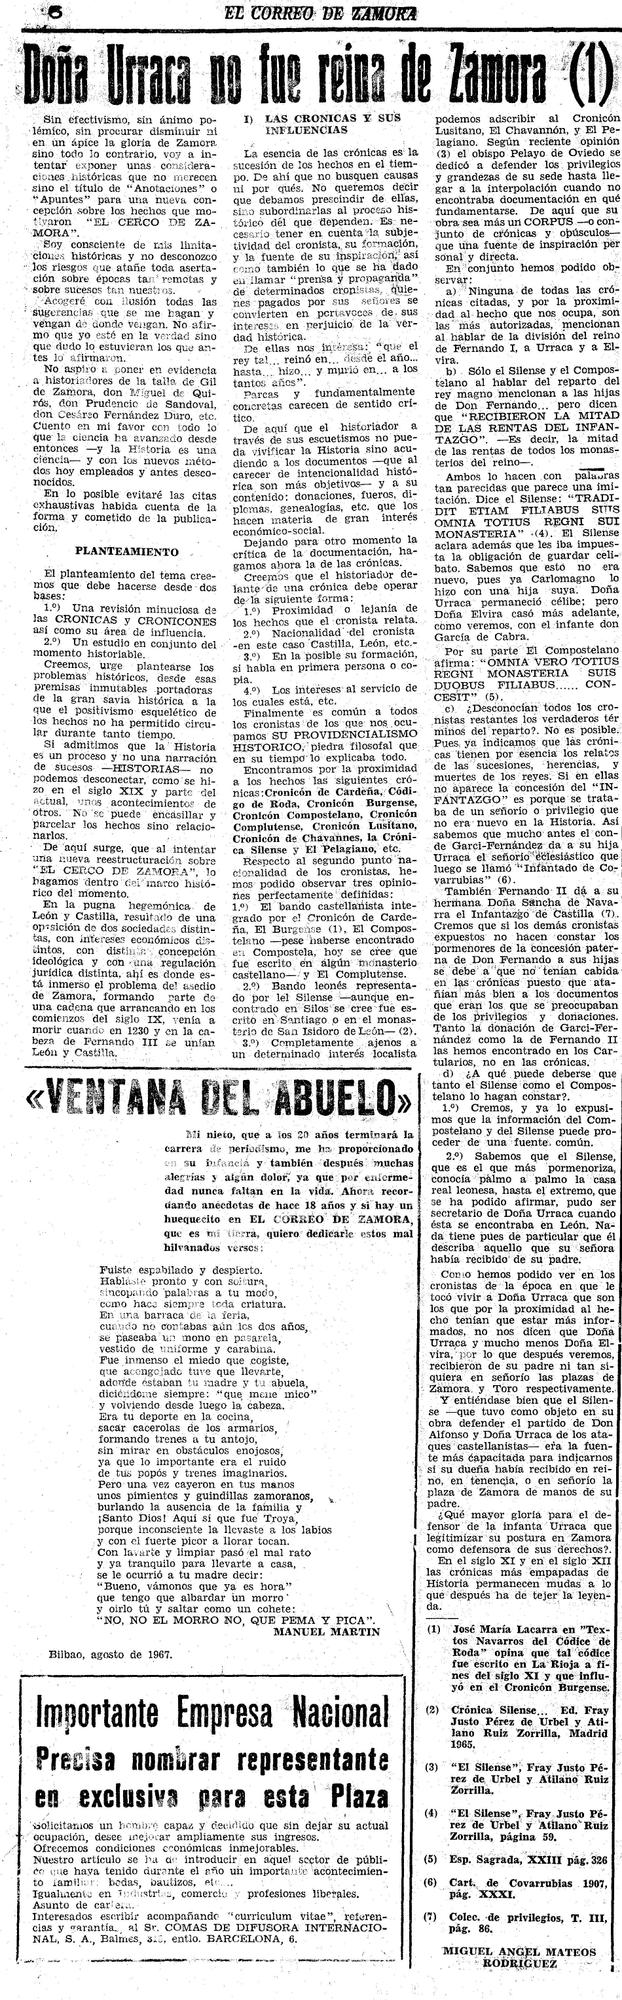 Novena entrega de Doña Urraca no fue Reina de Zamora. “El Correo de Zamora”, 7 de enero de 1968